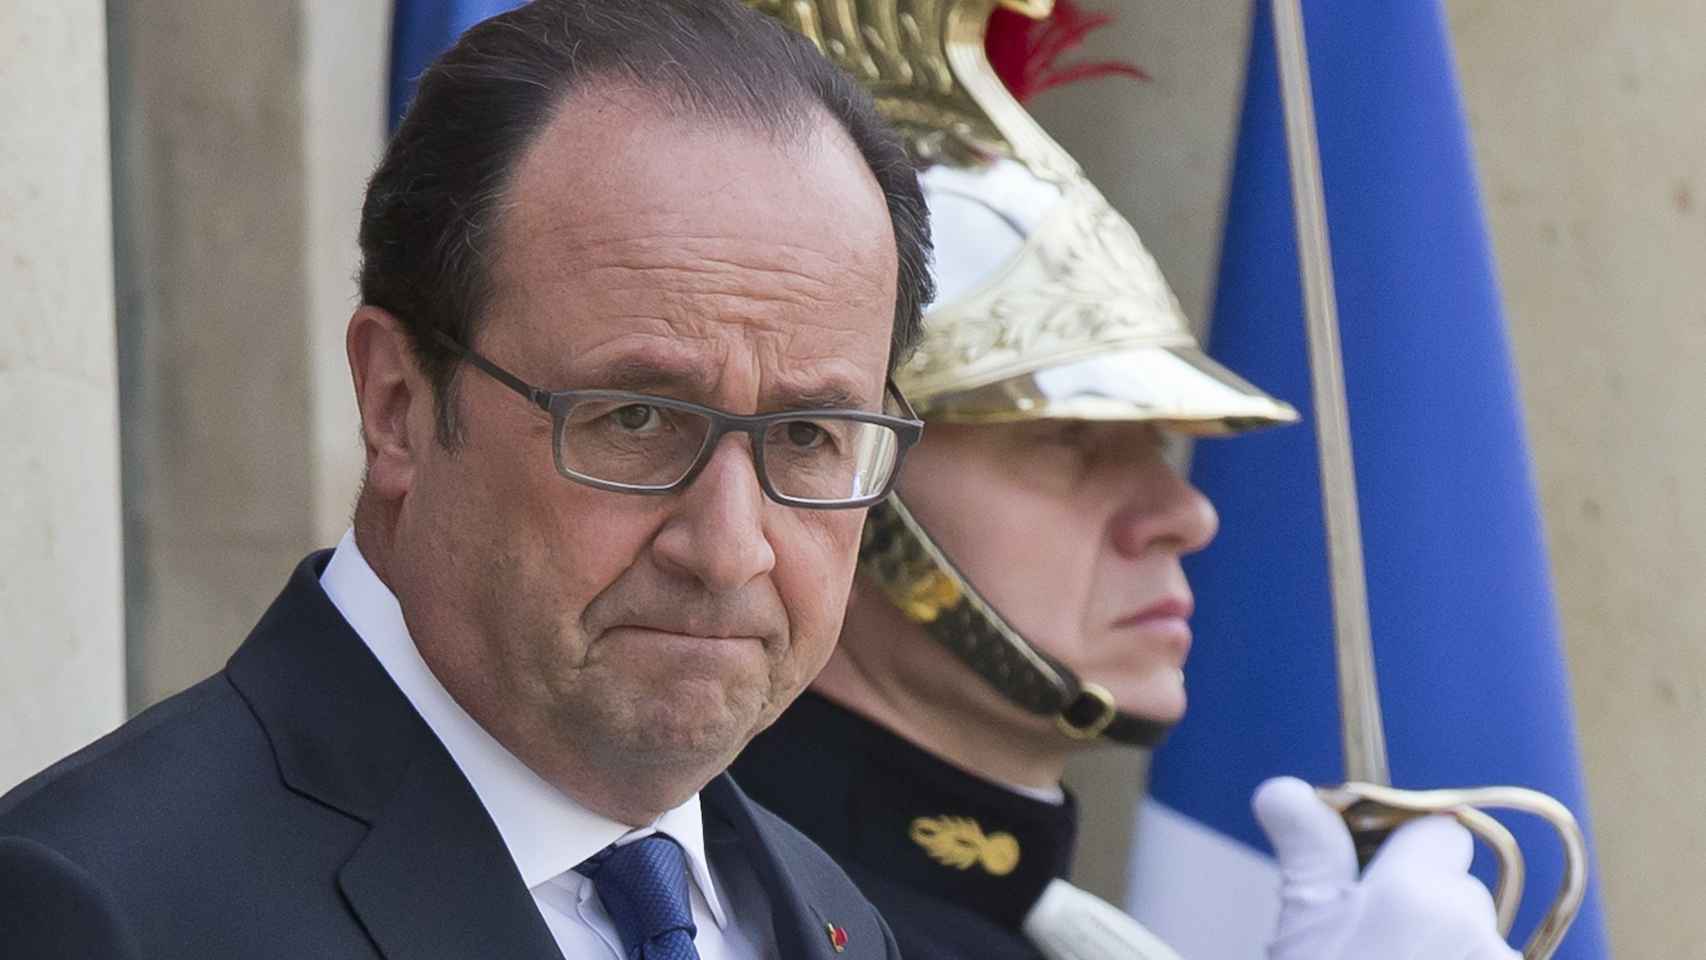 FranÇoise Hollande